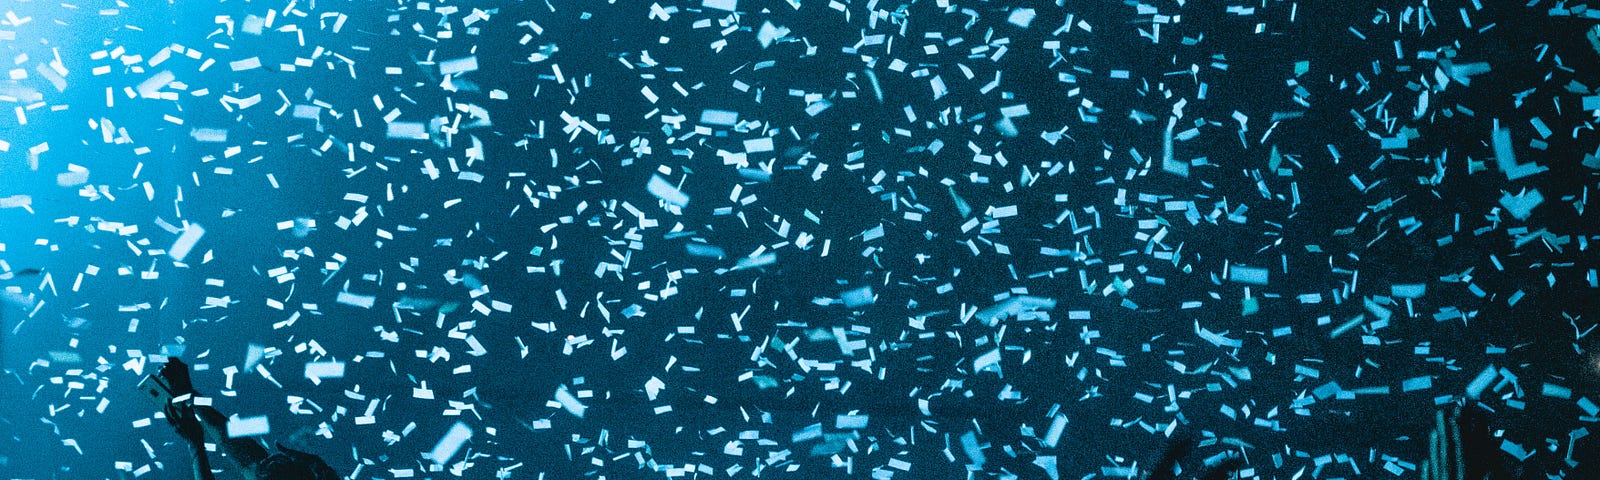 Confetti falling over a crowd